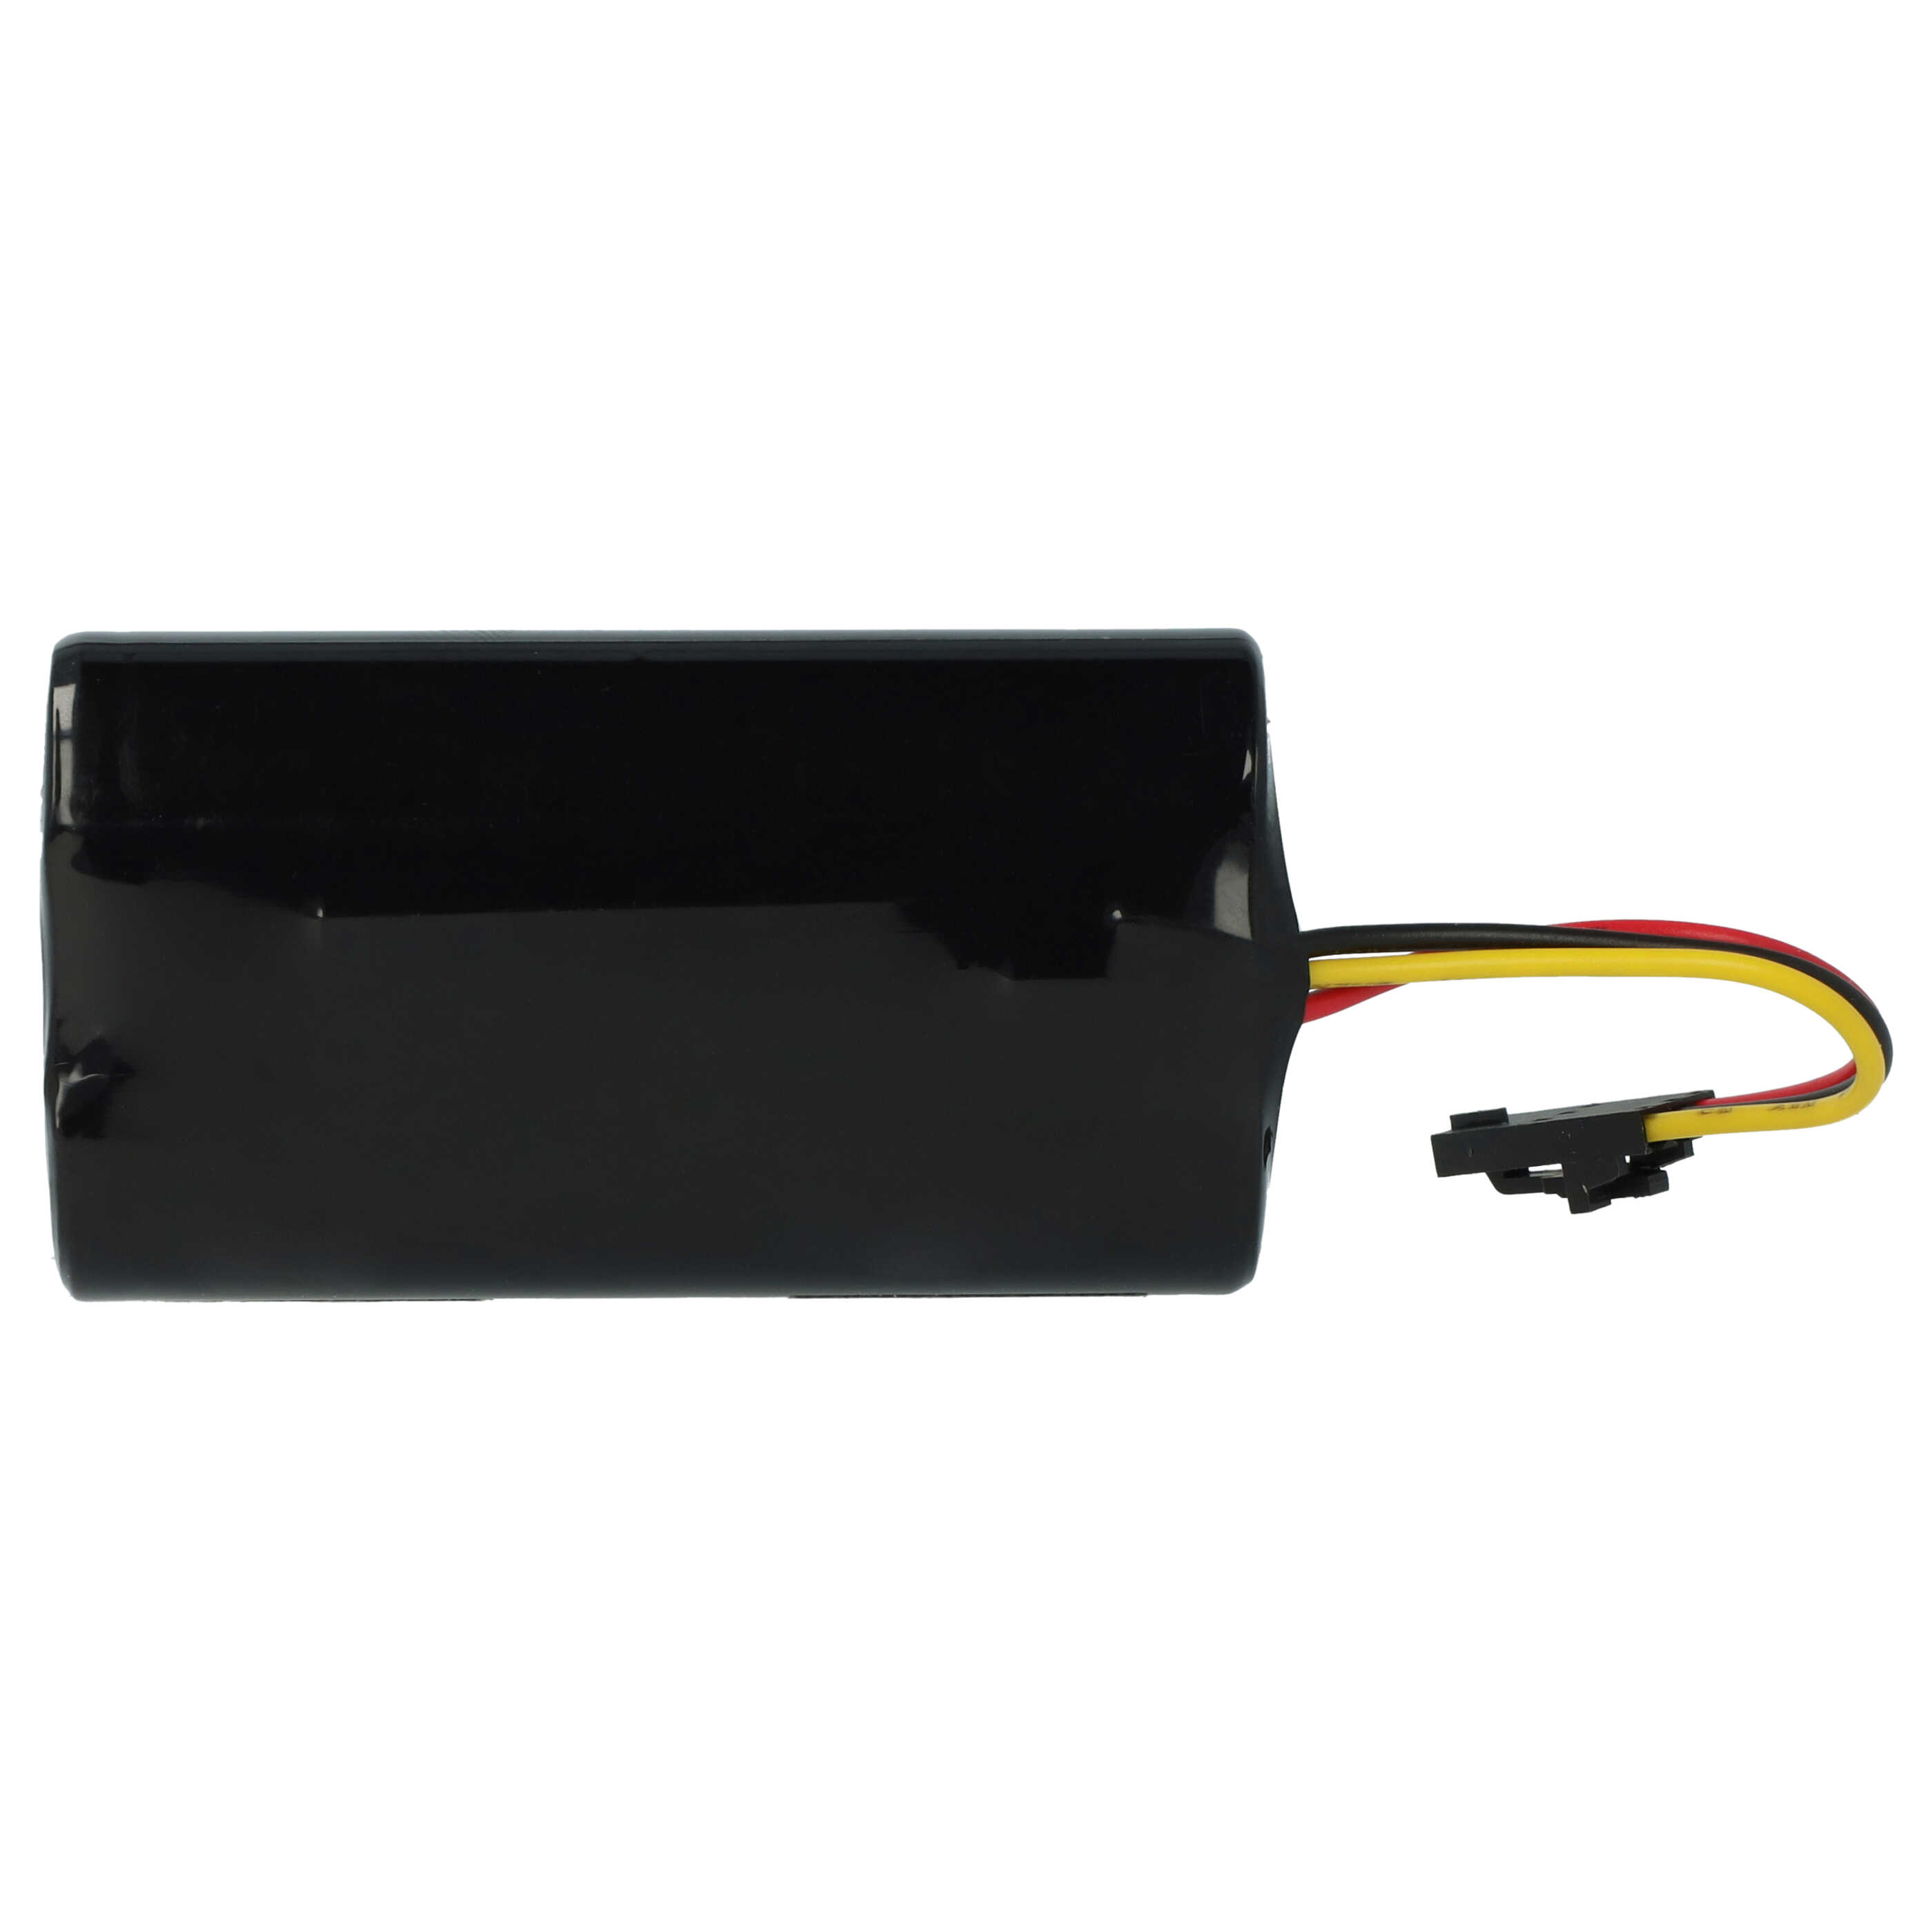 Batteria per tracker GPS sostituisce Topcon 1000001-01 Topcon - 2600mAh 7,4V Li-Ion